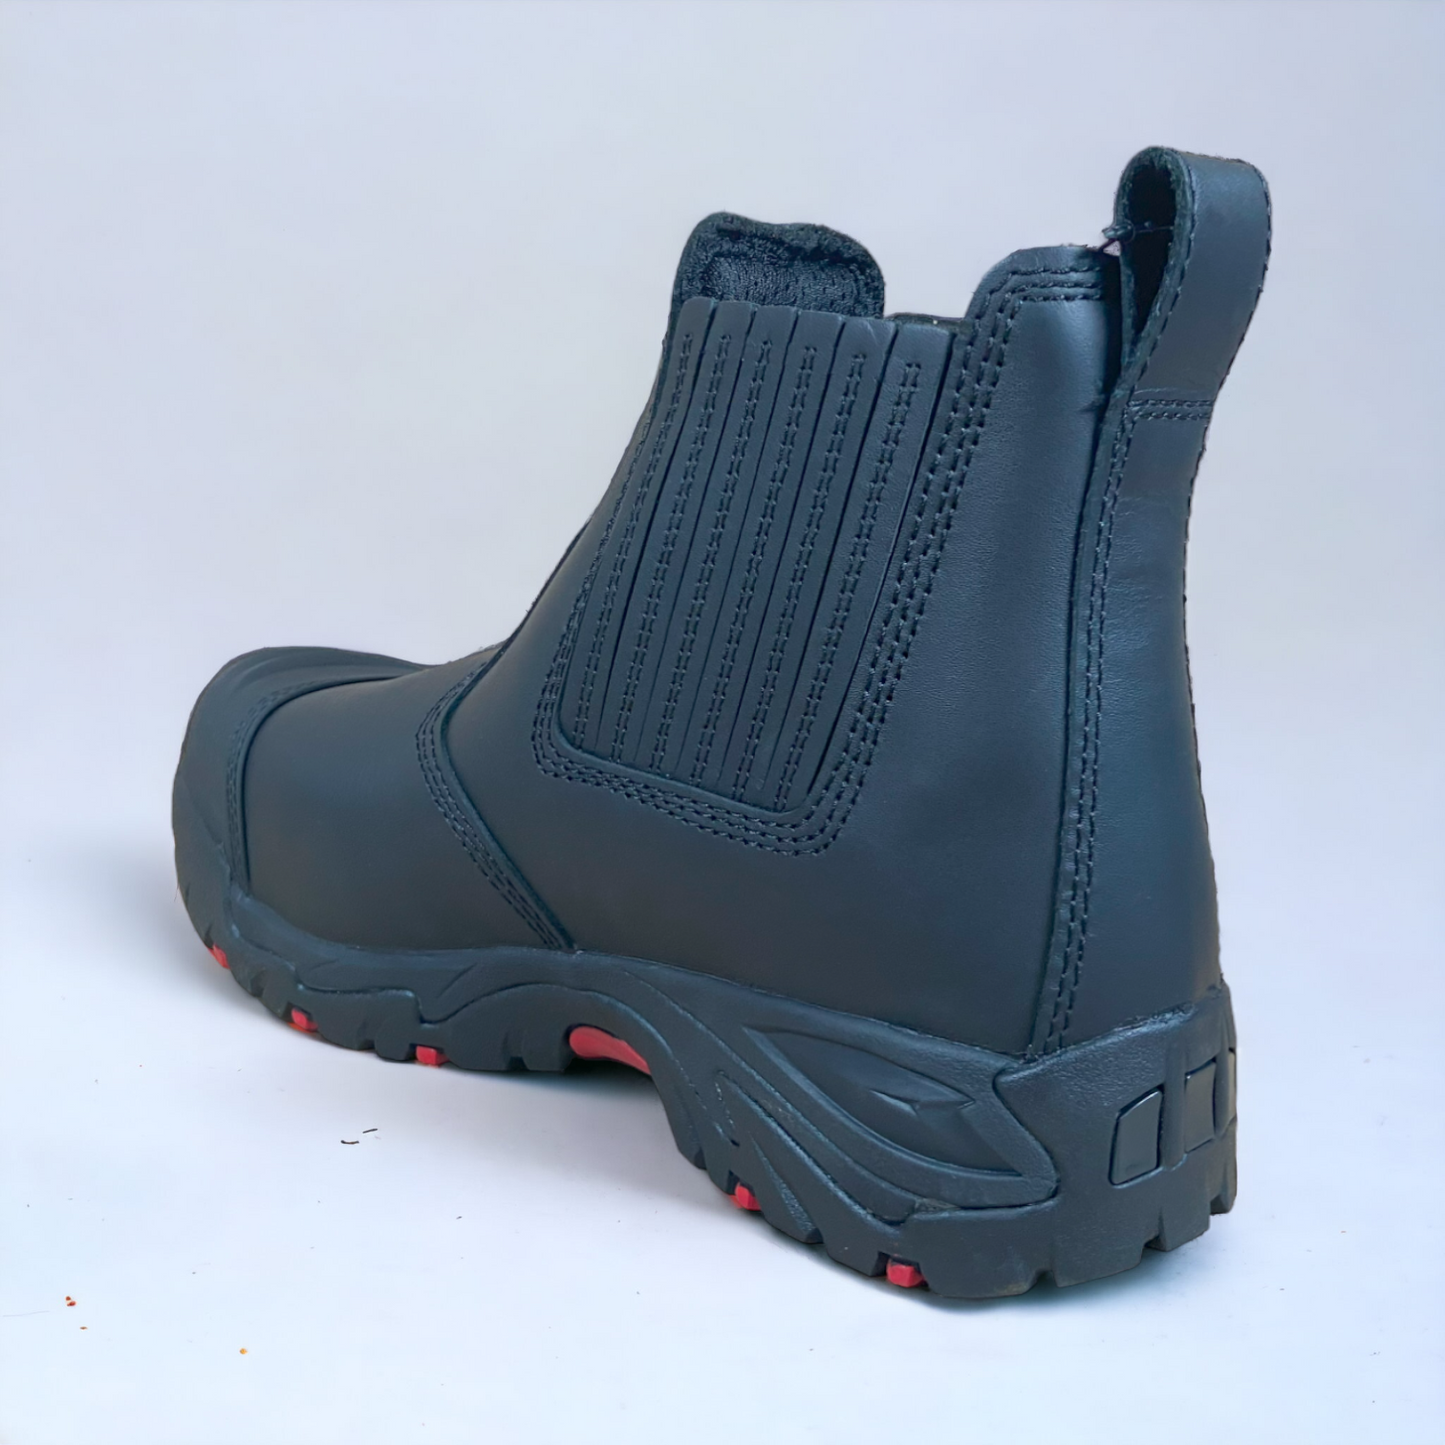 Ergonx Safety Boots Slip On (Hydrogen) Black